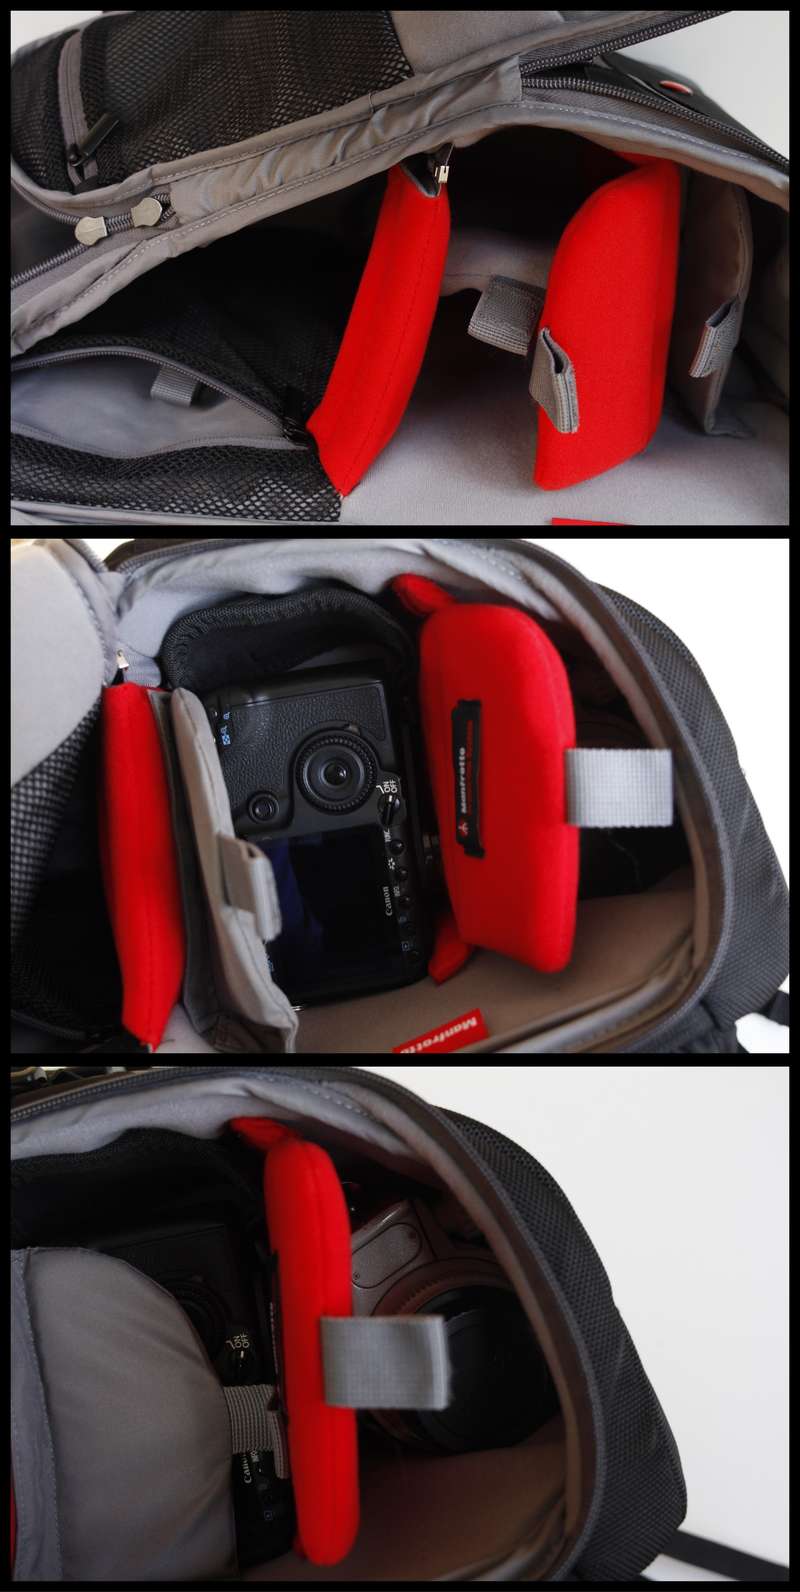 Vues du compartiment photo du Manfrotto Travel Backpack où peuvent loger un reflex monté d'un grand angle, un 70-200mm et un 85mm, Ph. Moctar KANE.